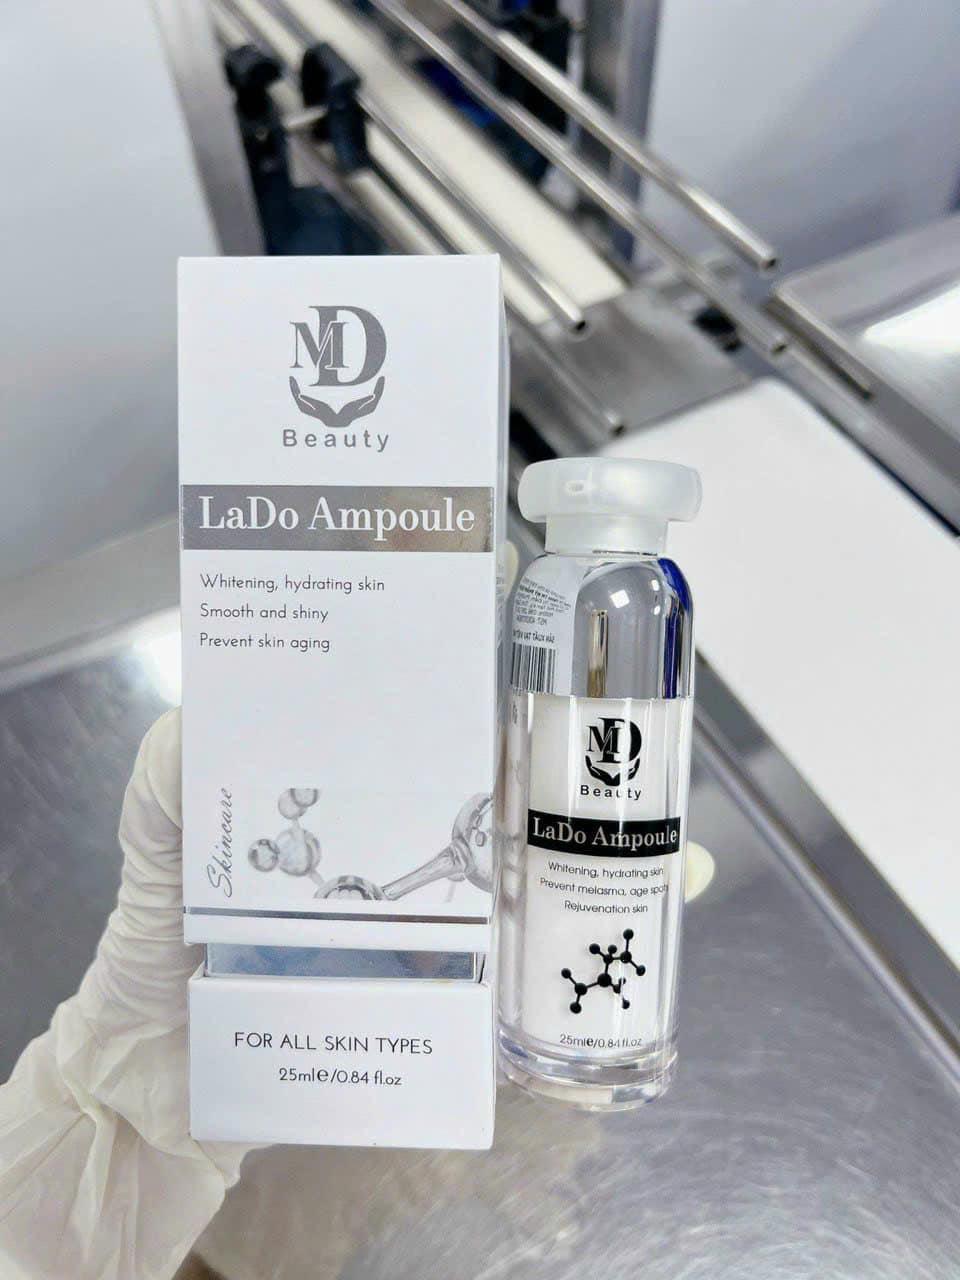 Tại sao nên tham khảo chọn Serum LaDo Ampoule nhà MD  Beauty  mà không phải những sản phẩm khác